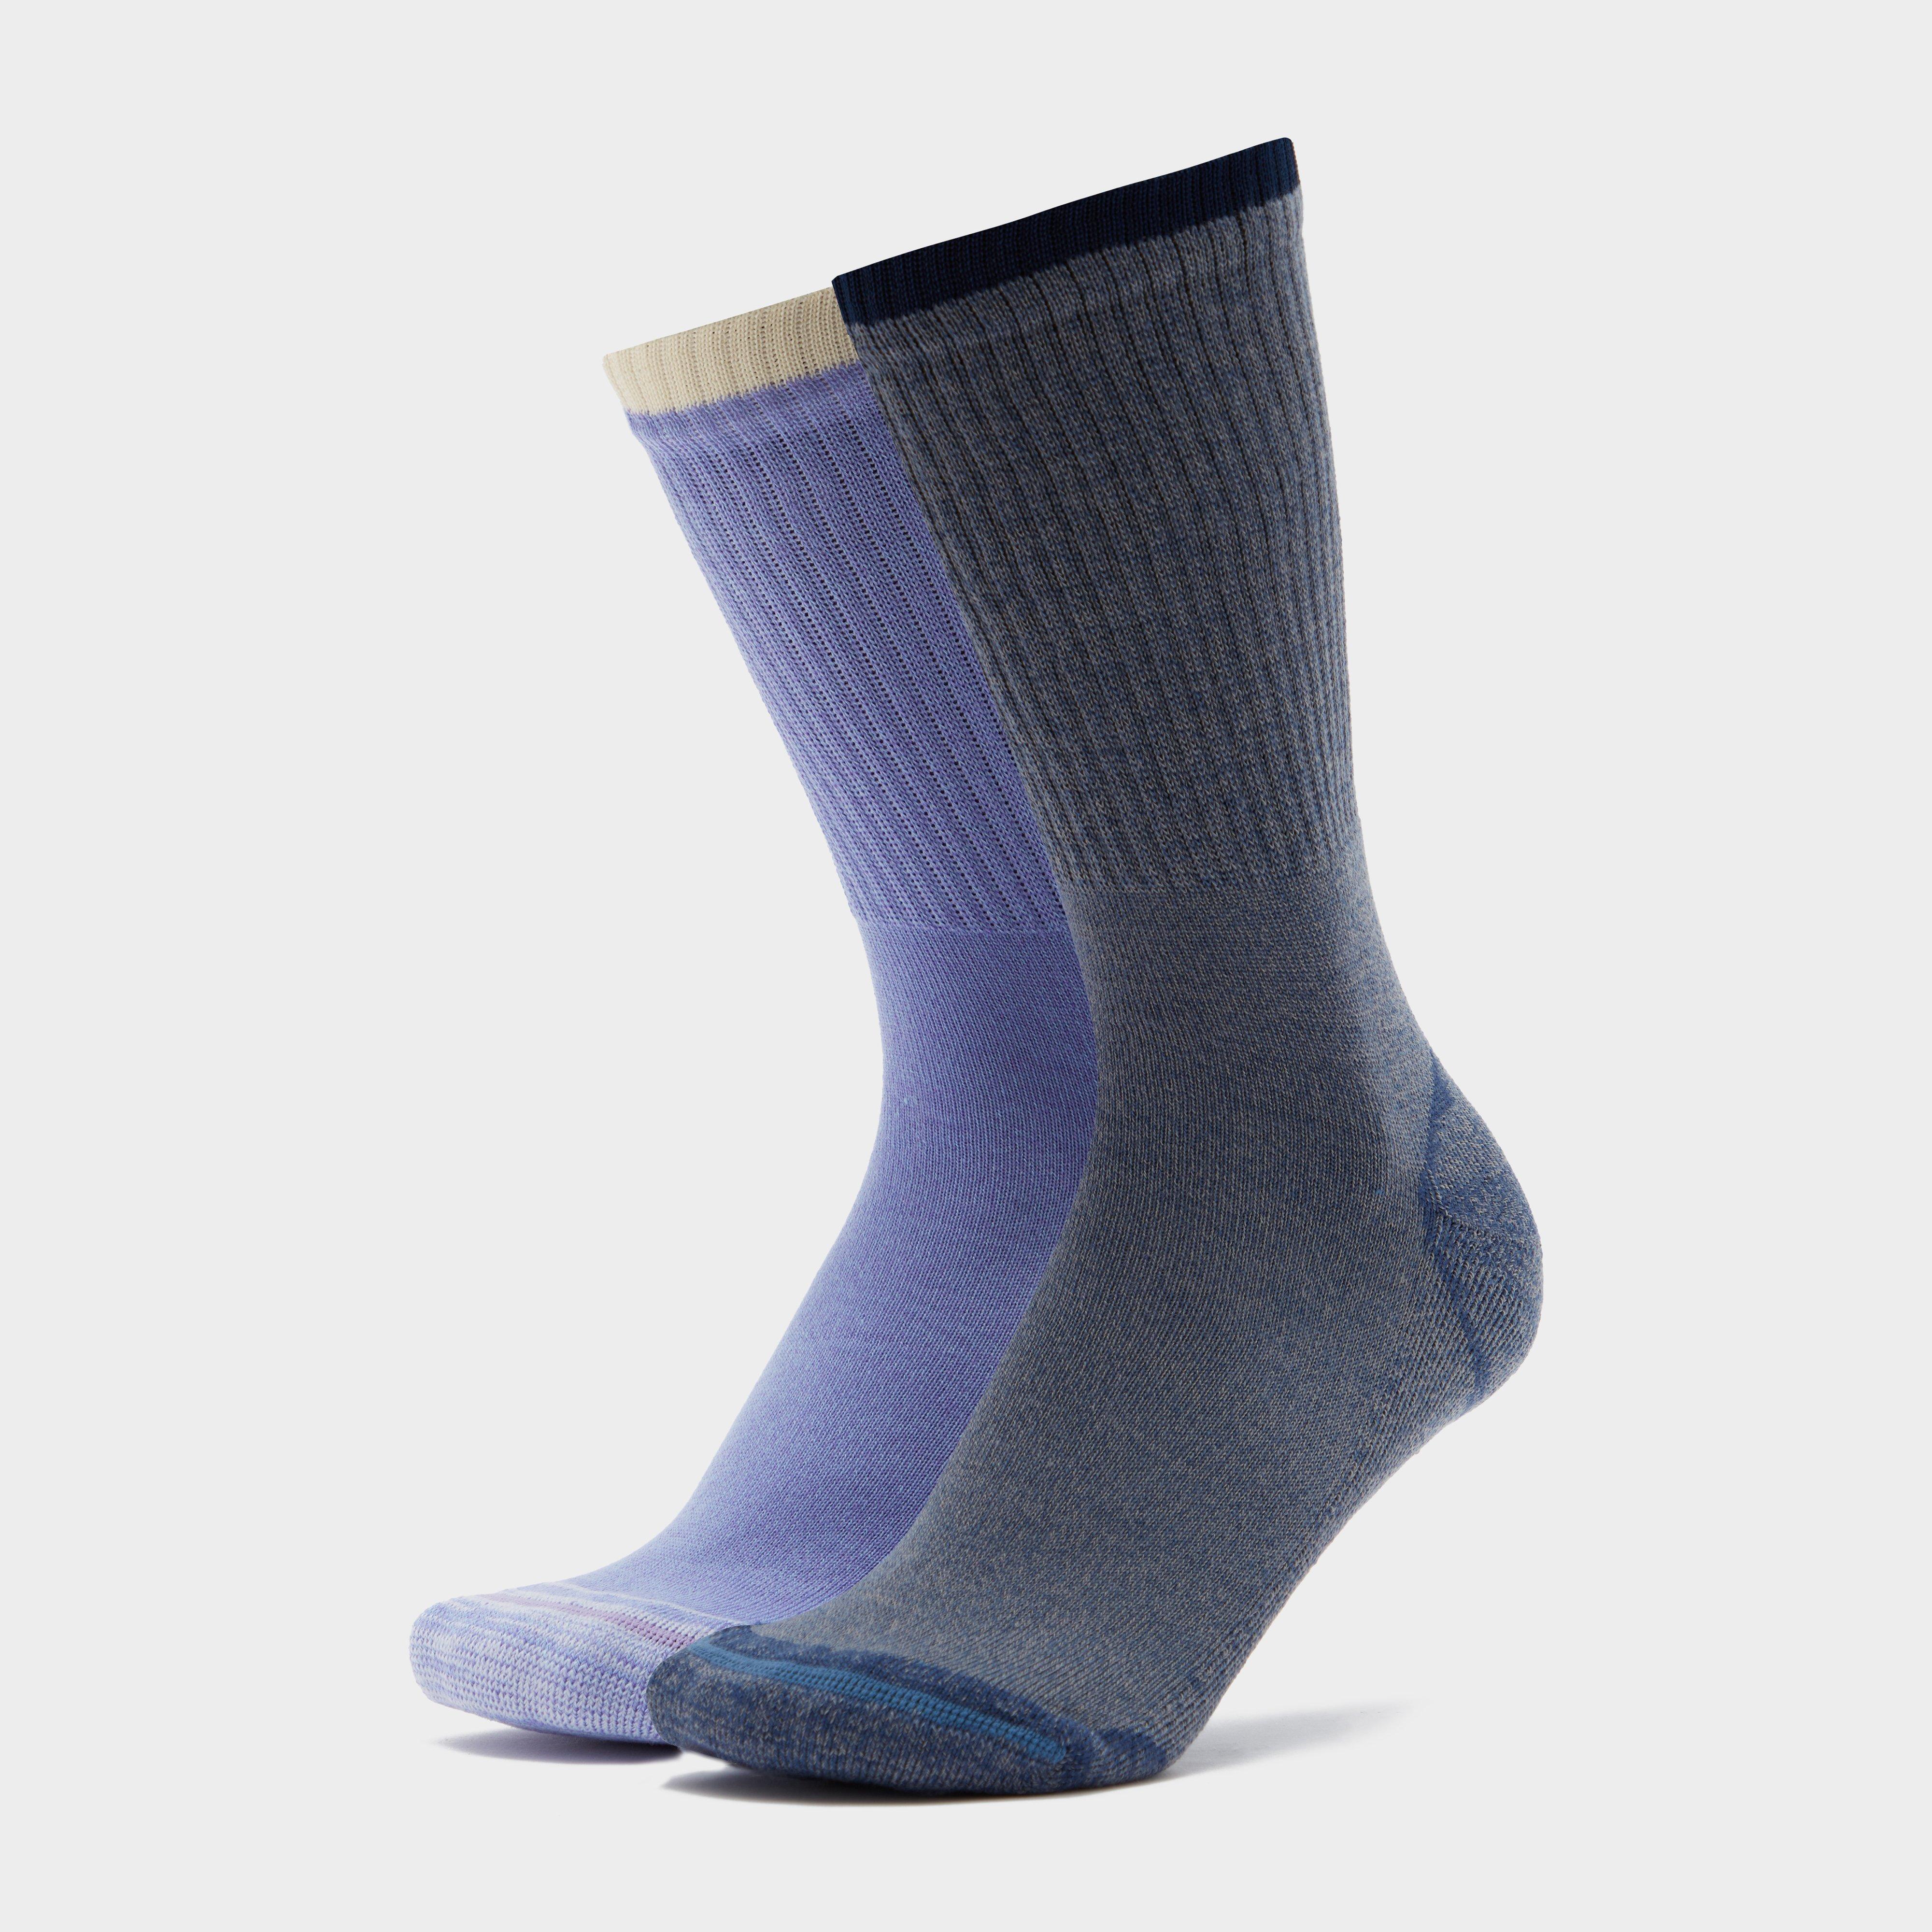 Peter Storm Womens 2 Pack Walking Socks - Grey/purple  Grey/purple